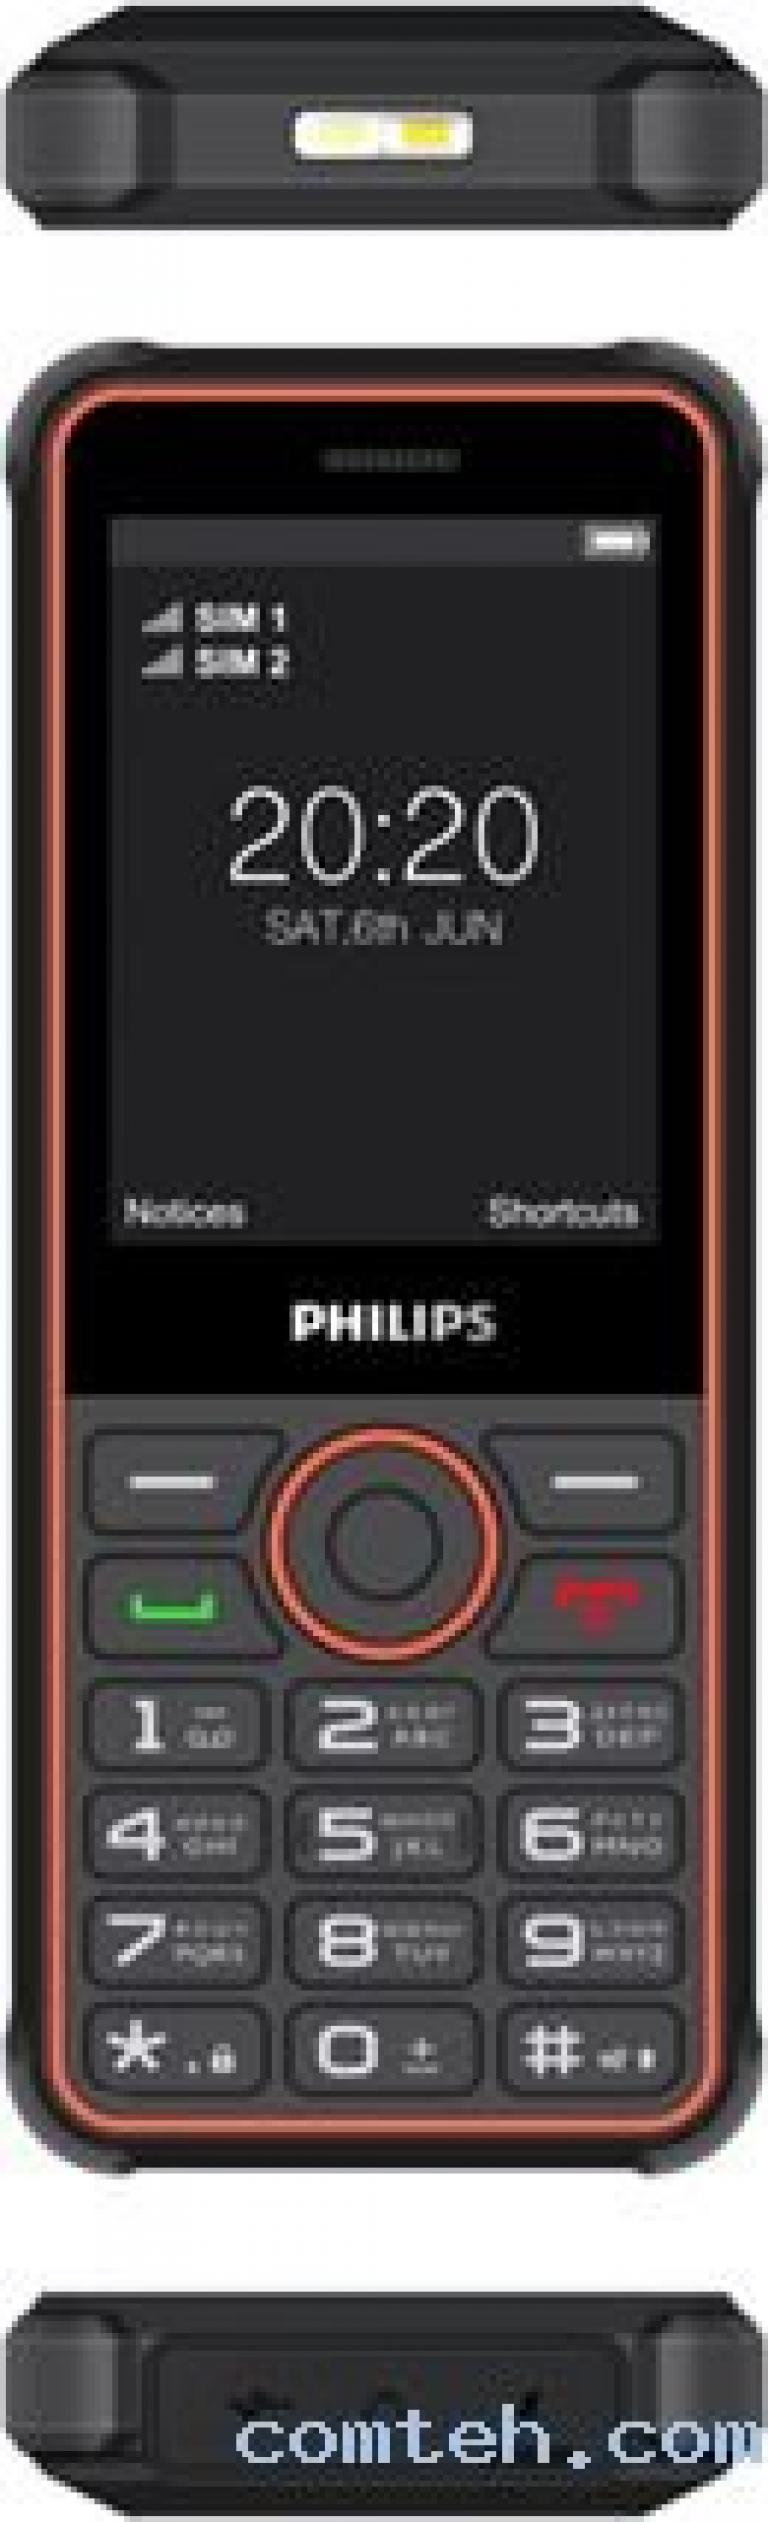 Филипс 2301. Philips Xenium 2301. Philips Xenium e2301. Филипс ксениум кнопочный е2301. Филипс ксениум е 2301.